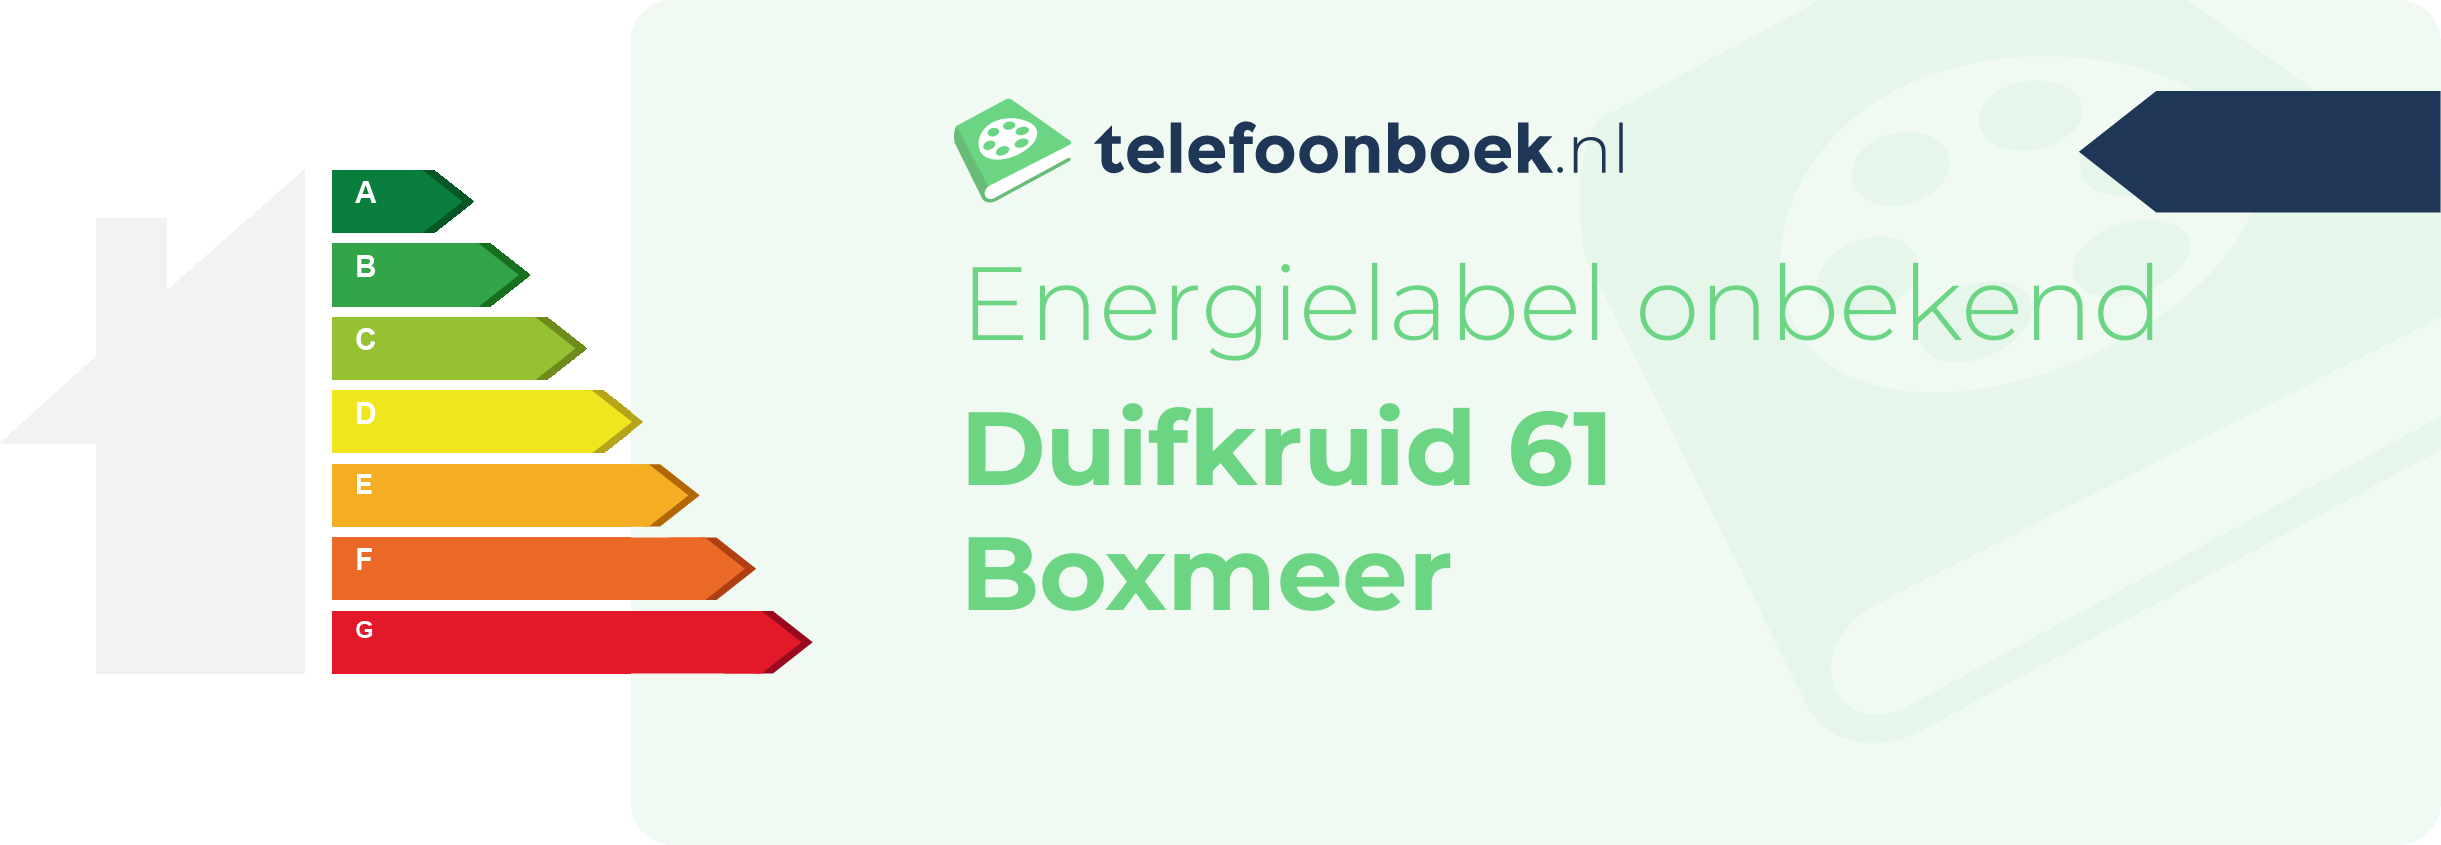 Energielabel Duifkruid 61 Boxmeer